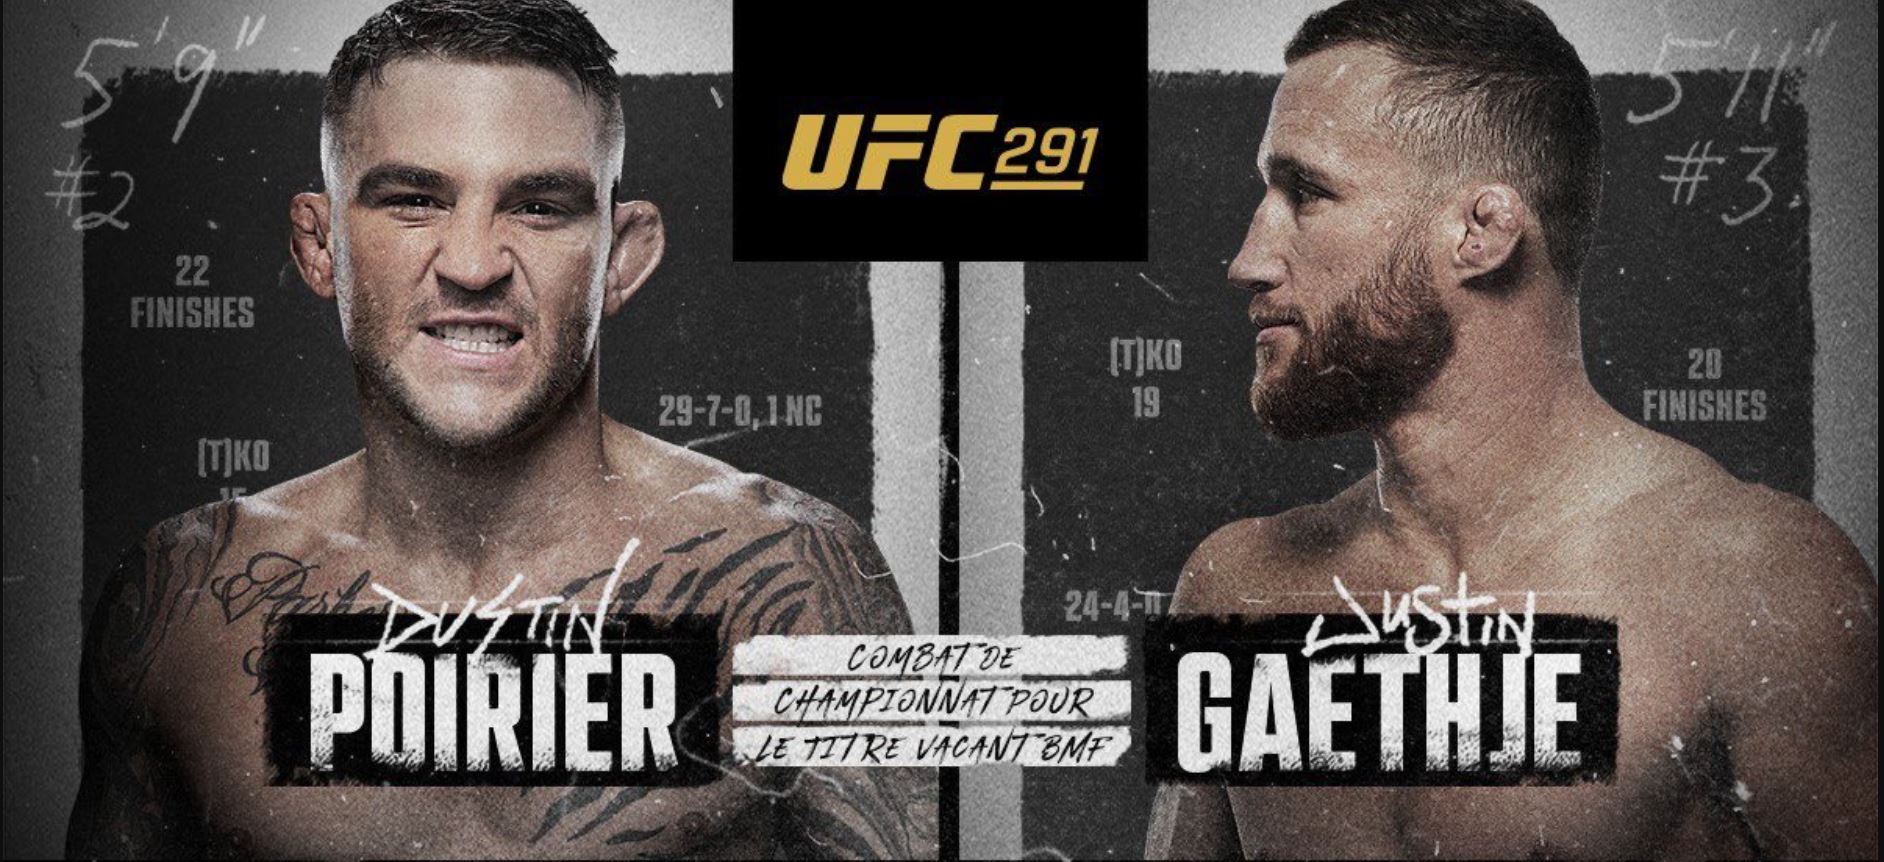 Poirier vs Gaethje - UFC 291 (TV/Streaming) Sur quelle chaine et à quelle heure suivre le combat et la soirée de MMA ?